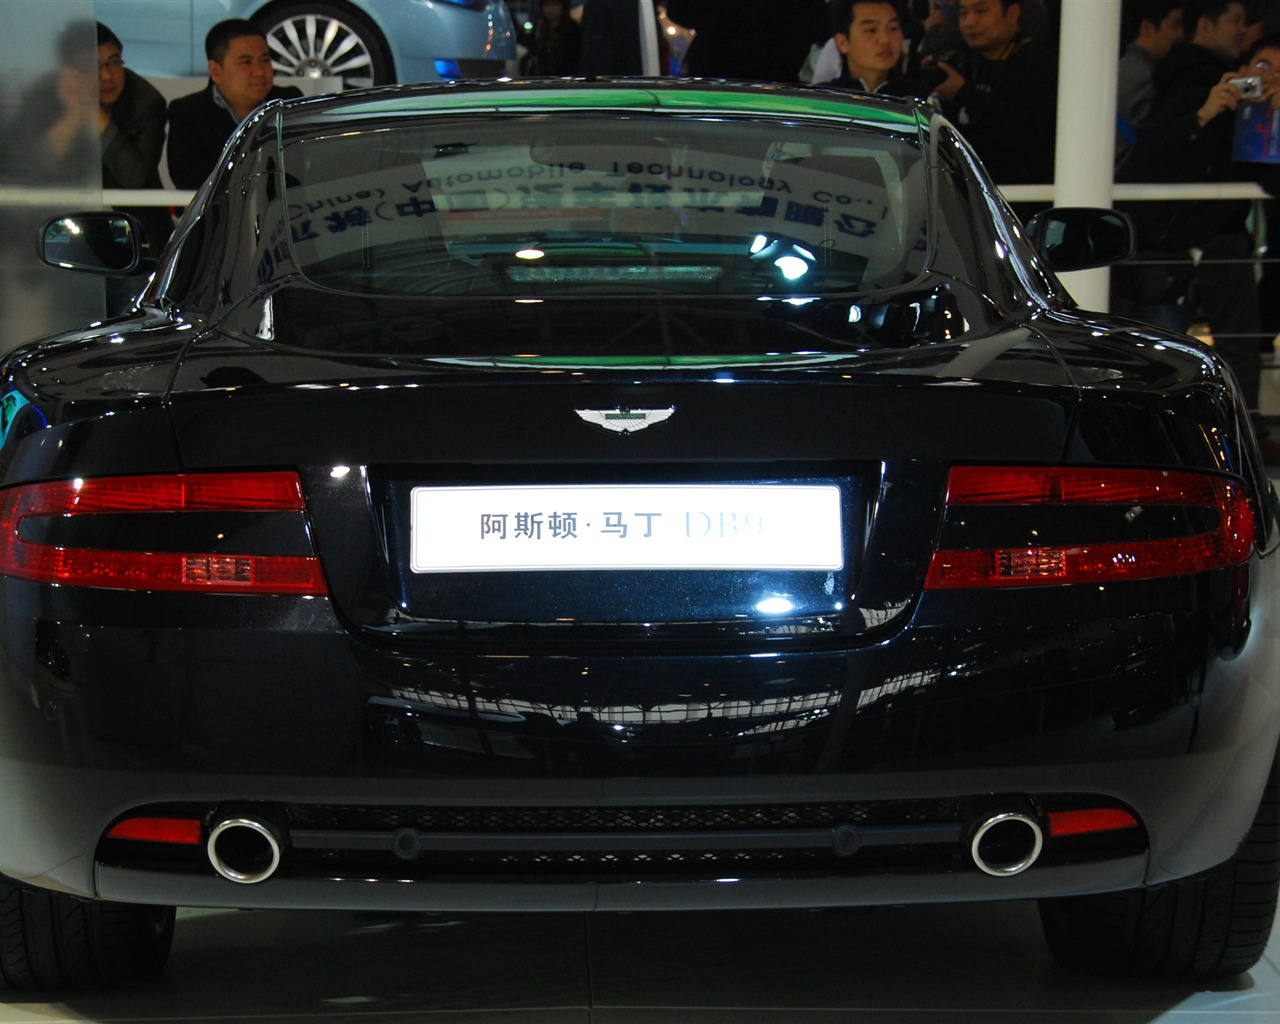 2010 Beijing International Auto Show (1) (z321x123 works) #30 - 1280x1024